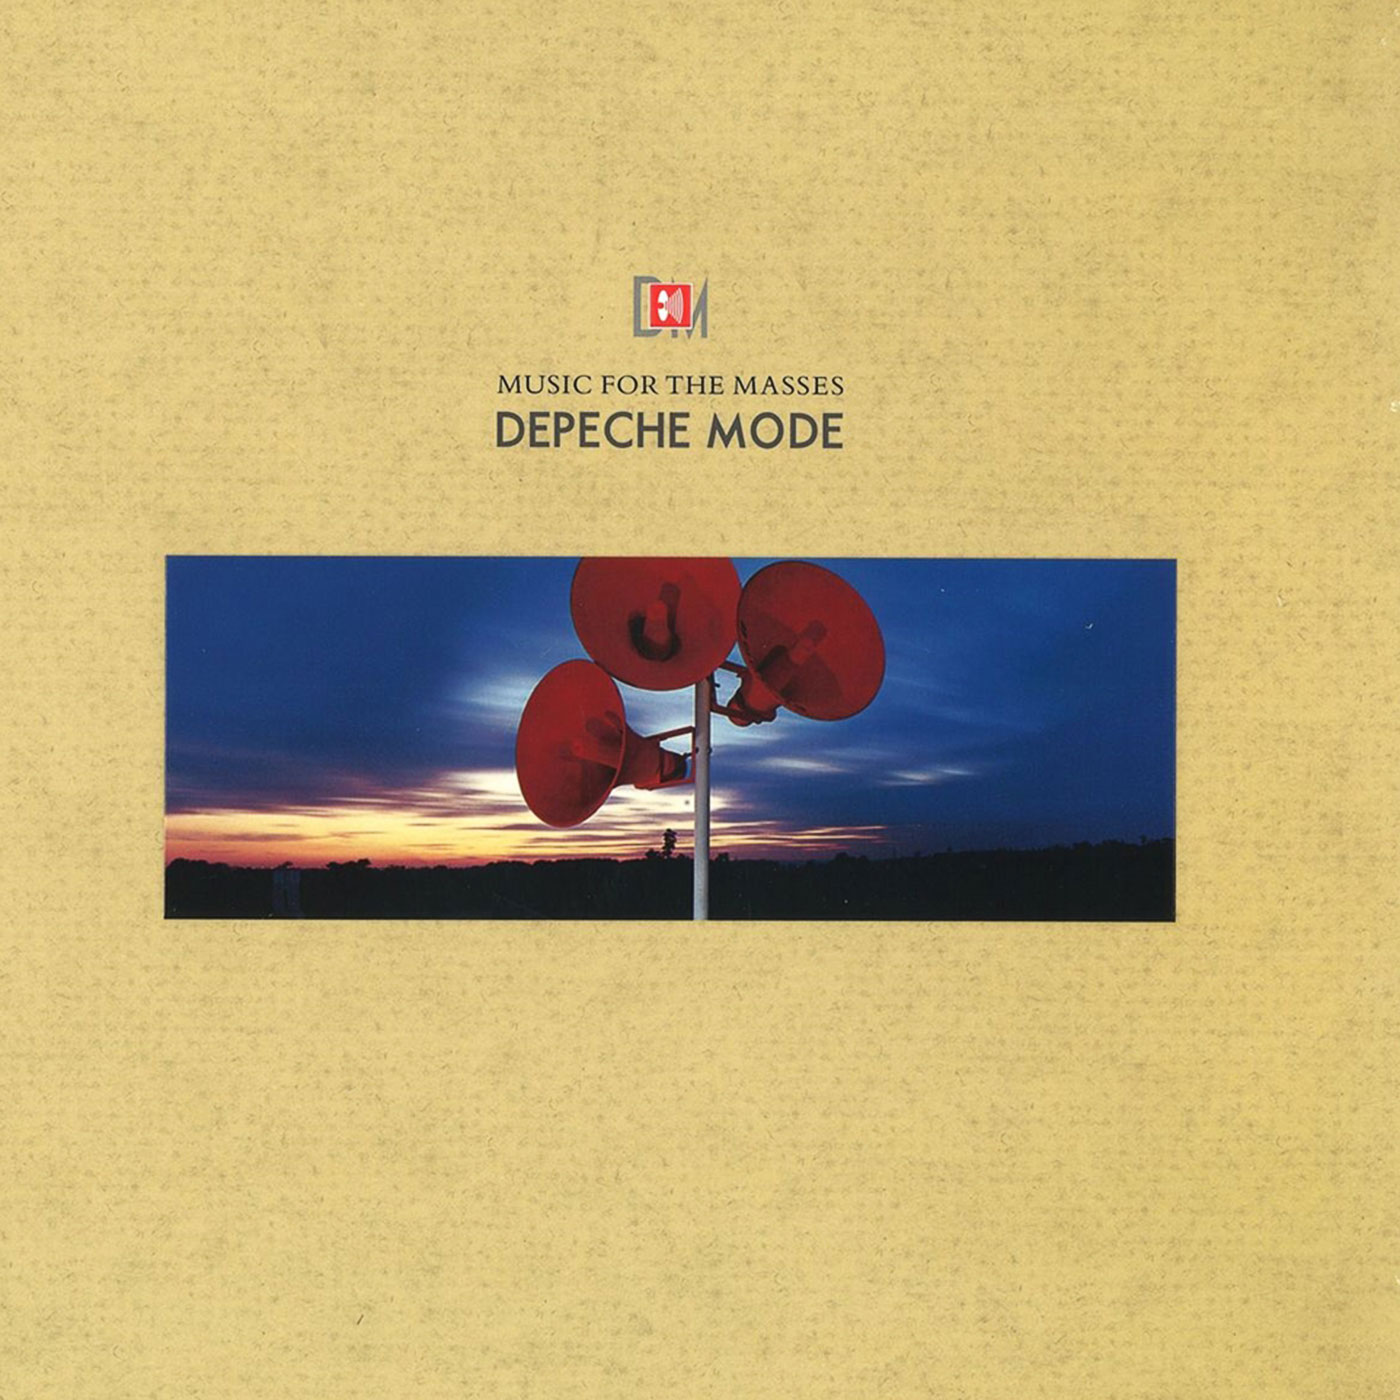 593 Depeche Mode – Music for the Masses